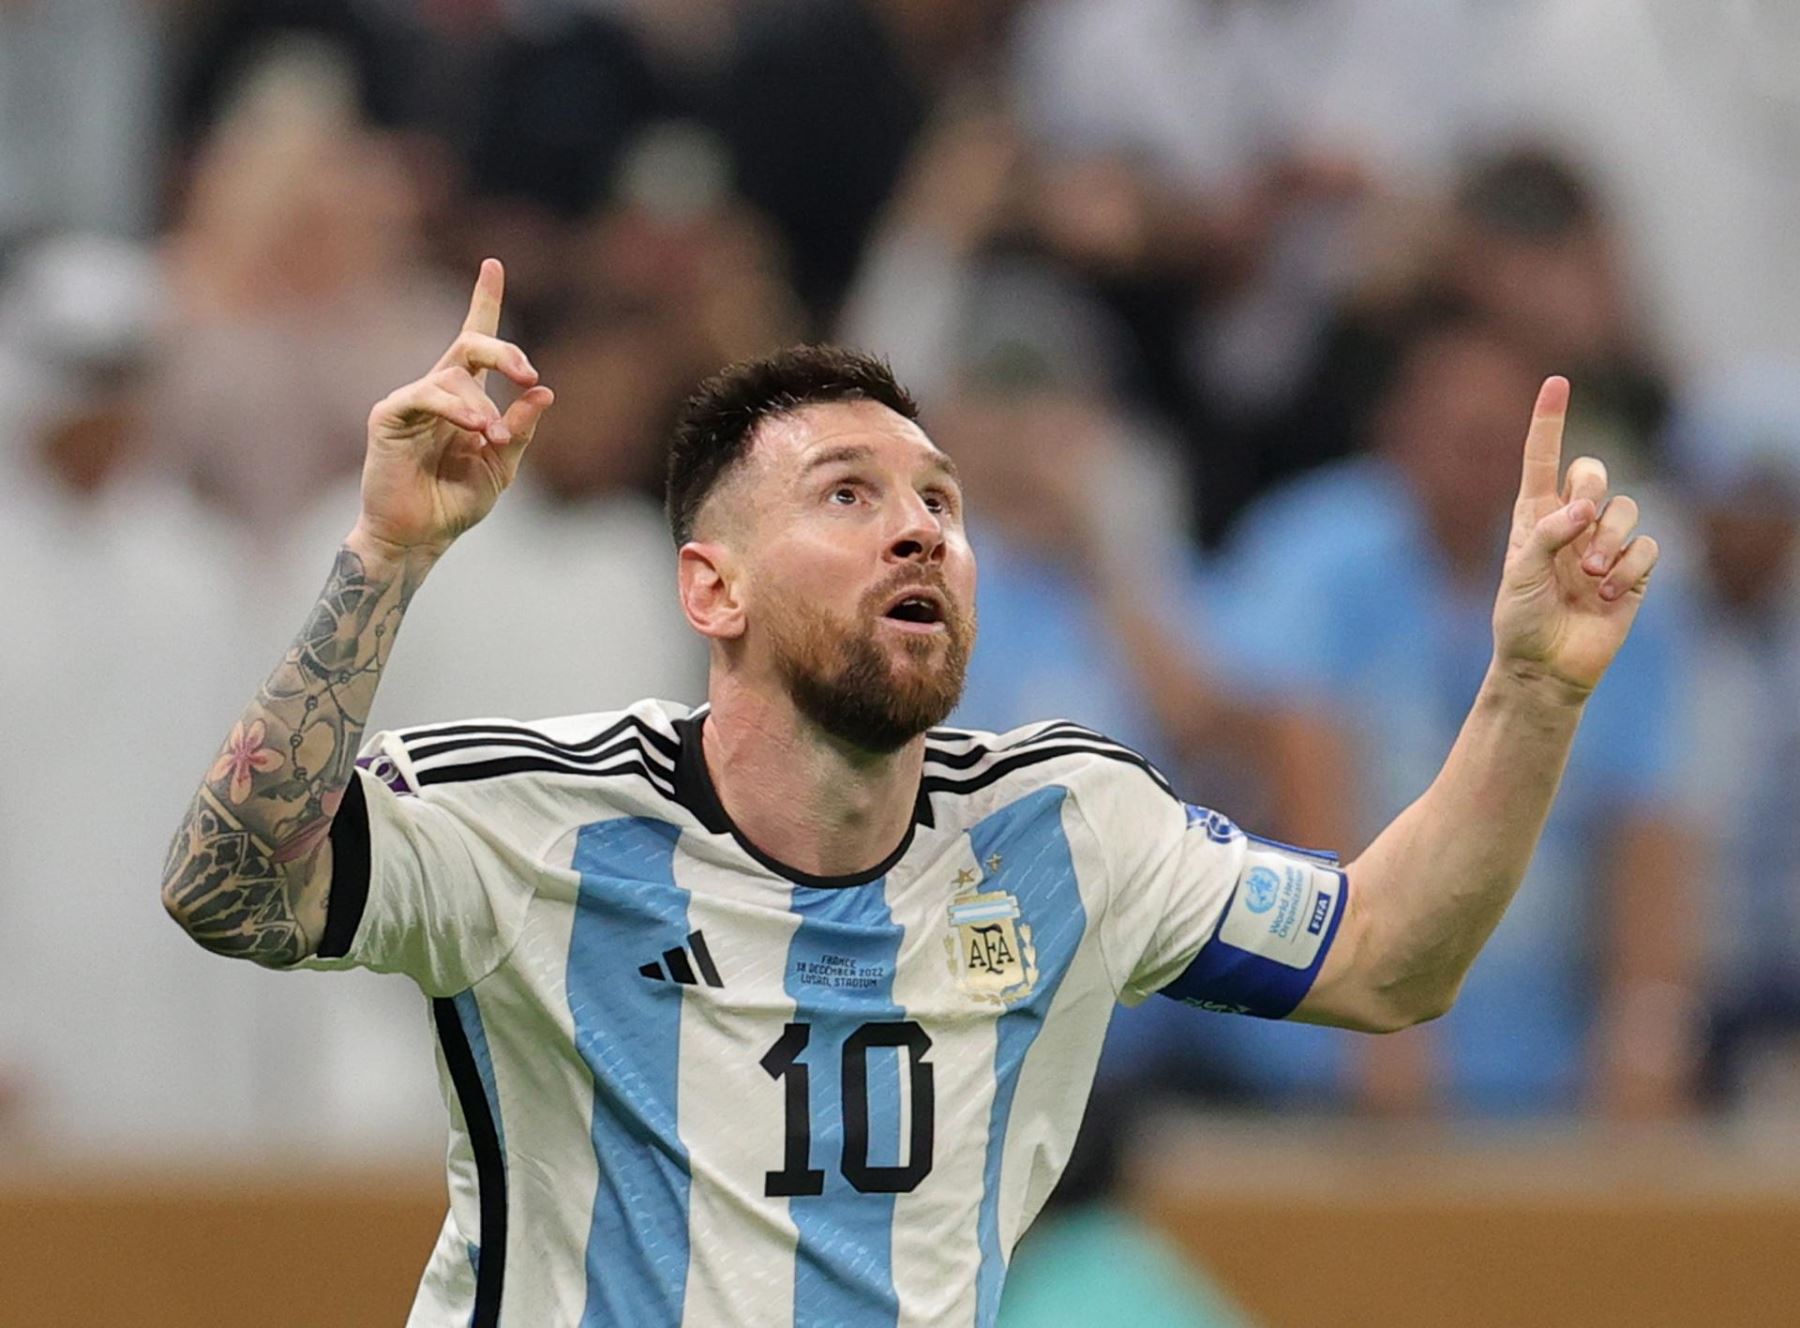 Lionel Messi de Argentina celebra al anotar el gol de la ventaja goleadora durante la final de la Copa Mundial de la FIFA 2022 entre Argentina y Francia en el estadio Lusail, Lusail, Qatar, el 18 de diciembre de 2022.
Foto: EFE